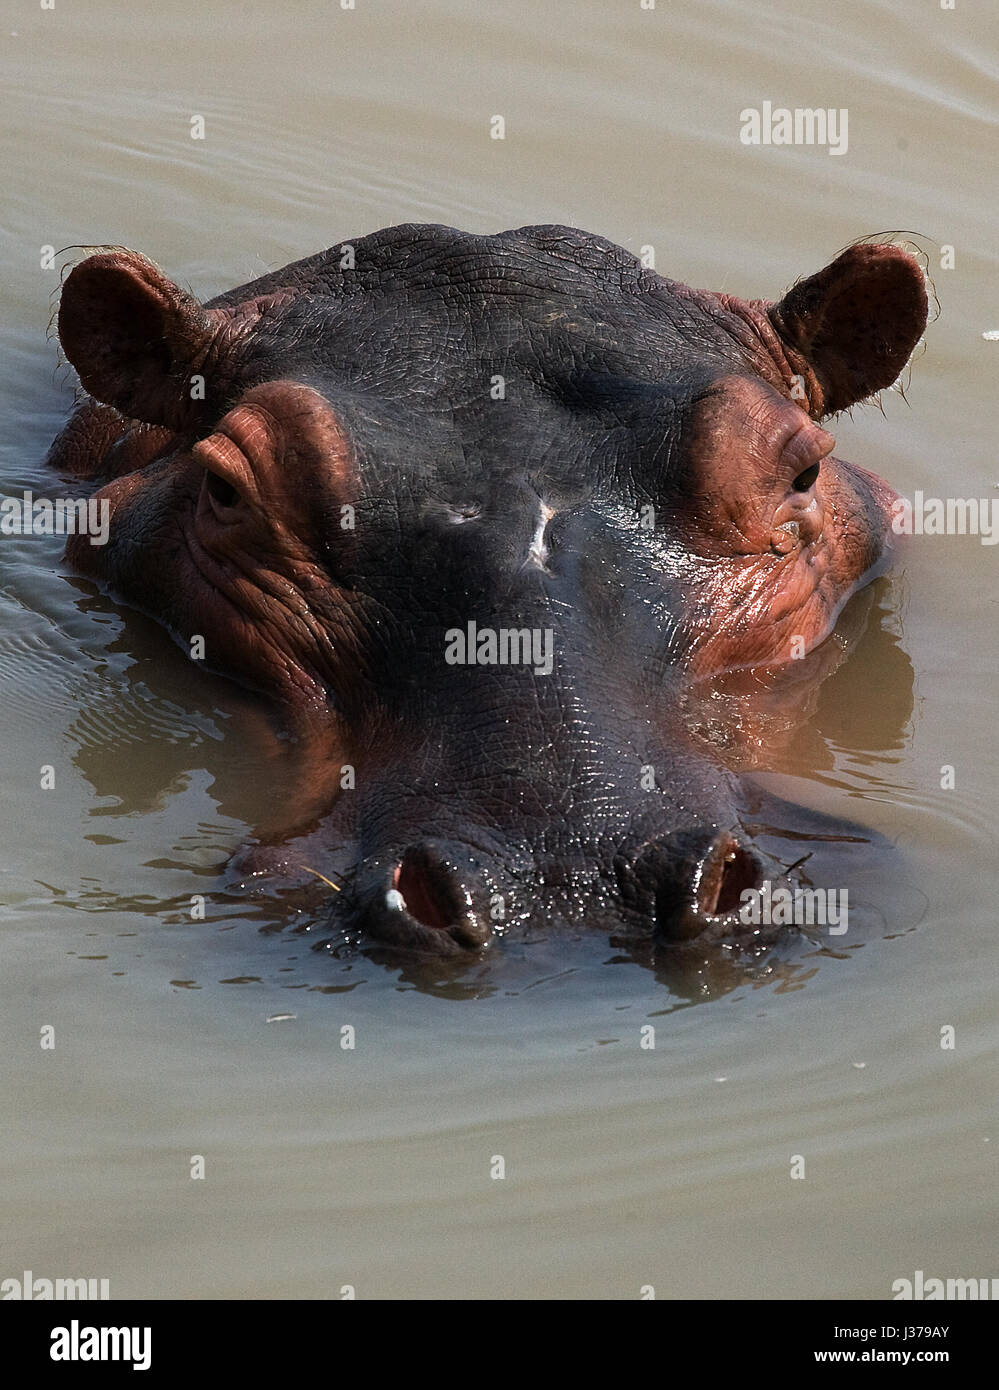 Hippo est assis dans l'eau. Botswana. Delta de l'Okavango. Banque D'Images